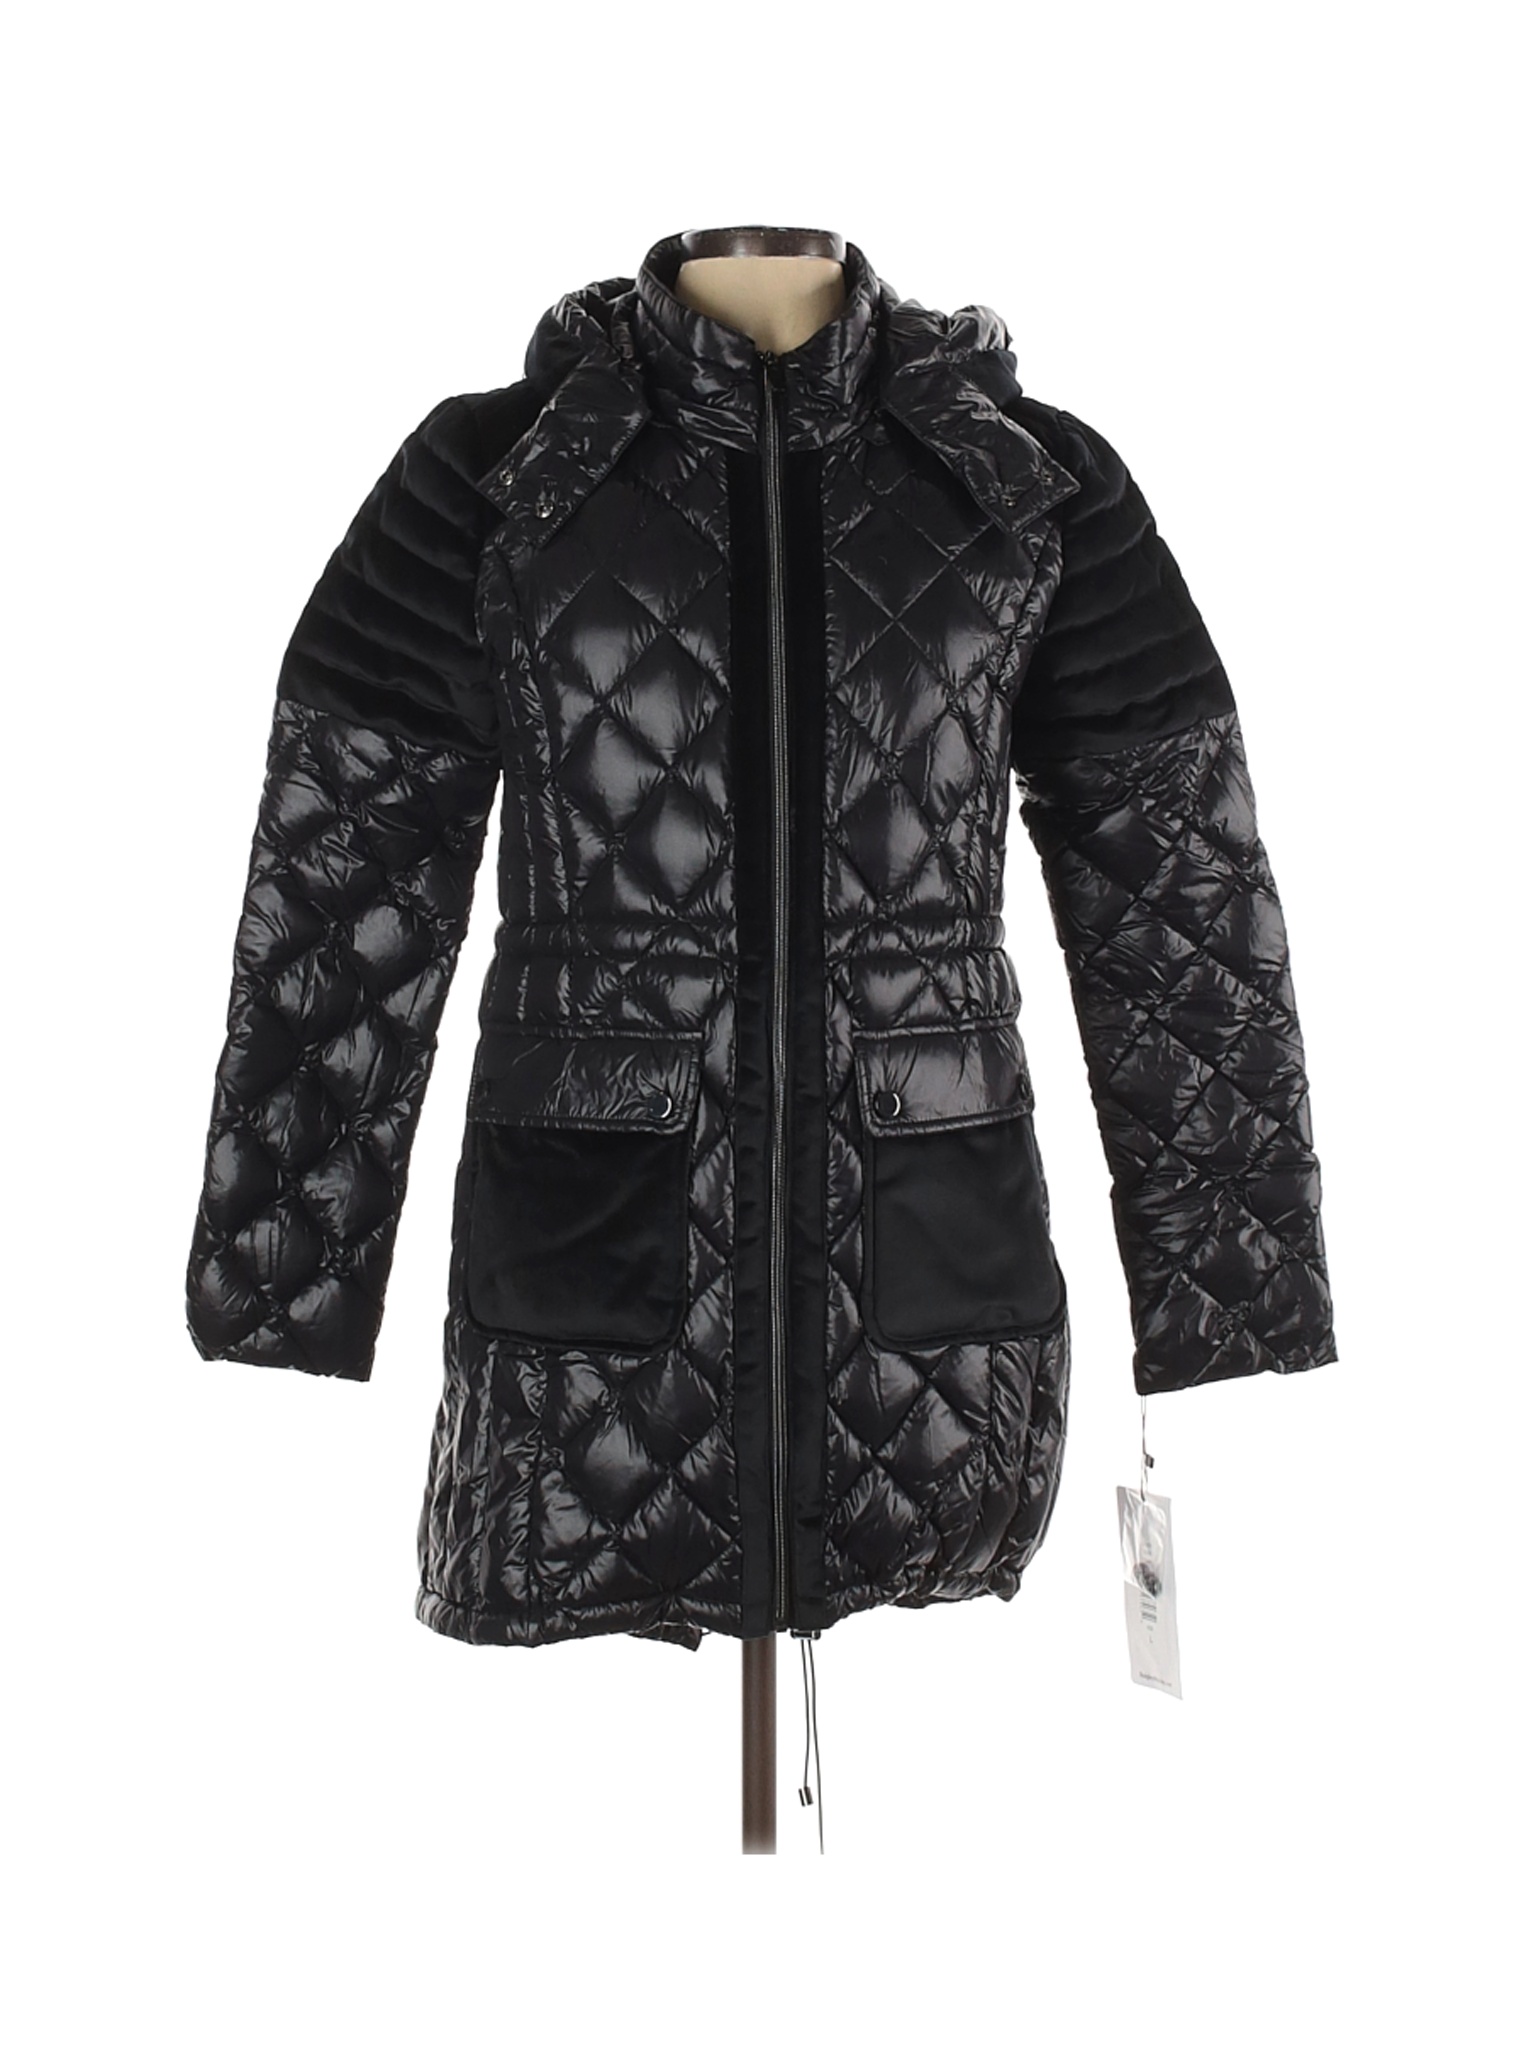 NWT Belle Badgley Mischka Women Black Coat L | eBay